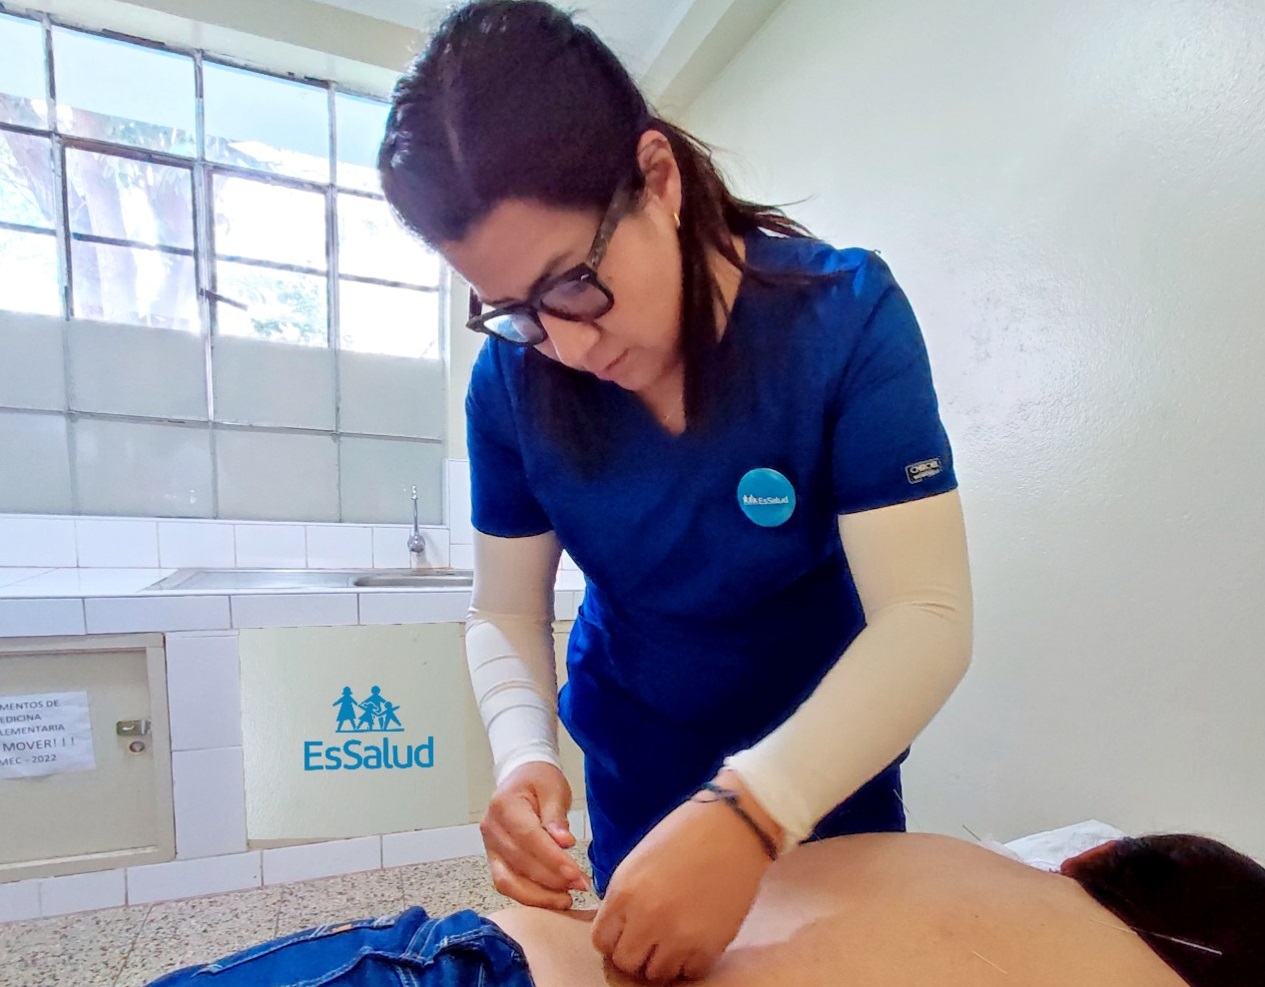 Essalud - Medicina Complementaria de EsSalud Ayacucho realiza tratamientos terapéuticos con acupuntura